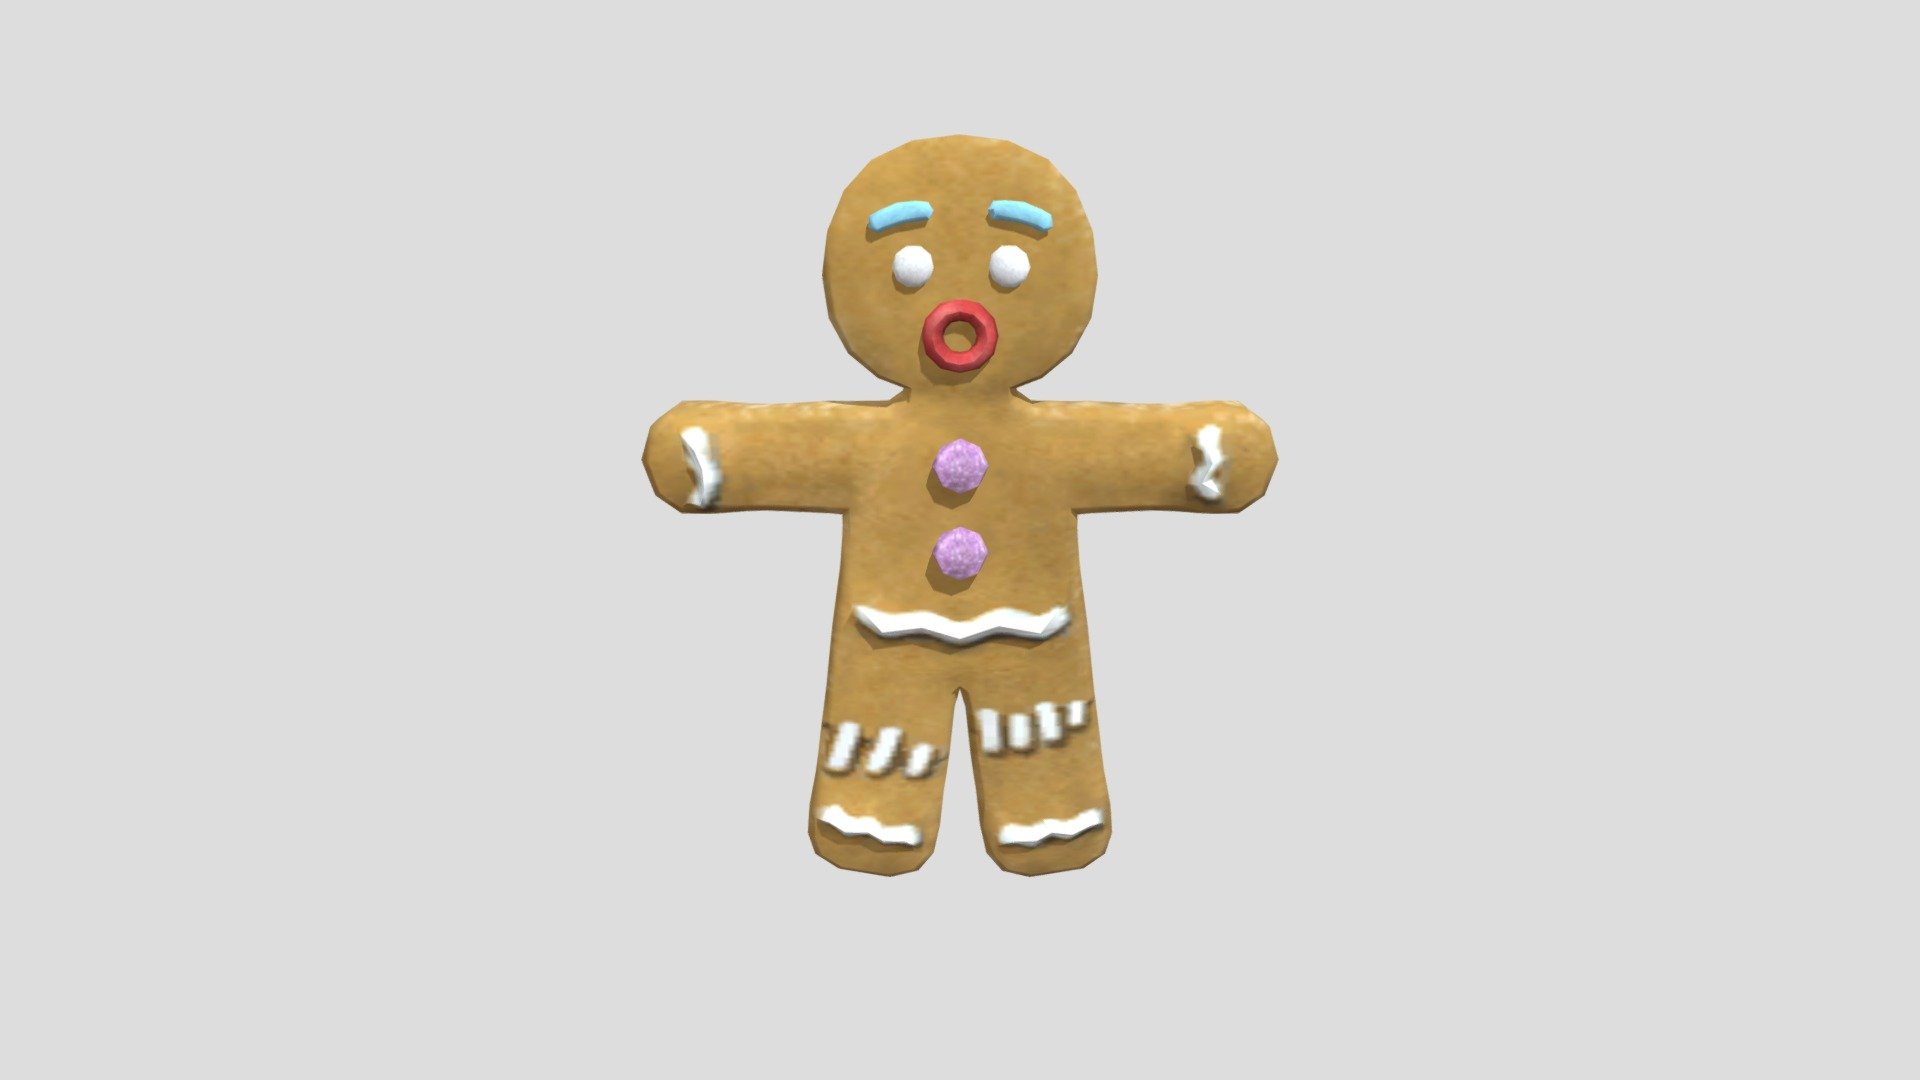 :) - Shrek 2 Gingerbread Man - Download Free 3D model by Neut2000 3d model